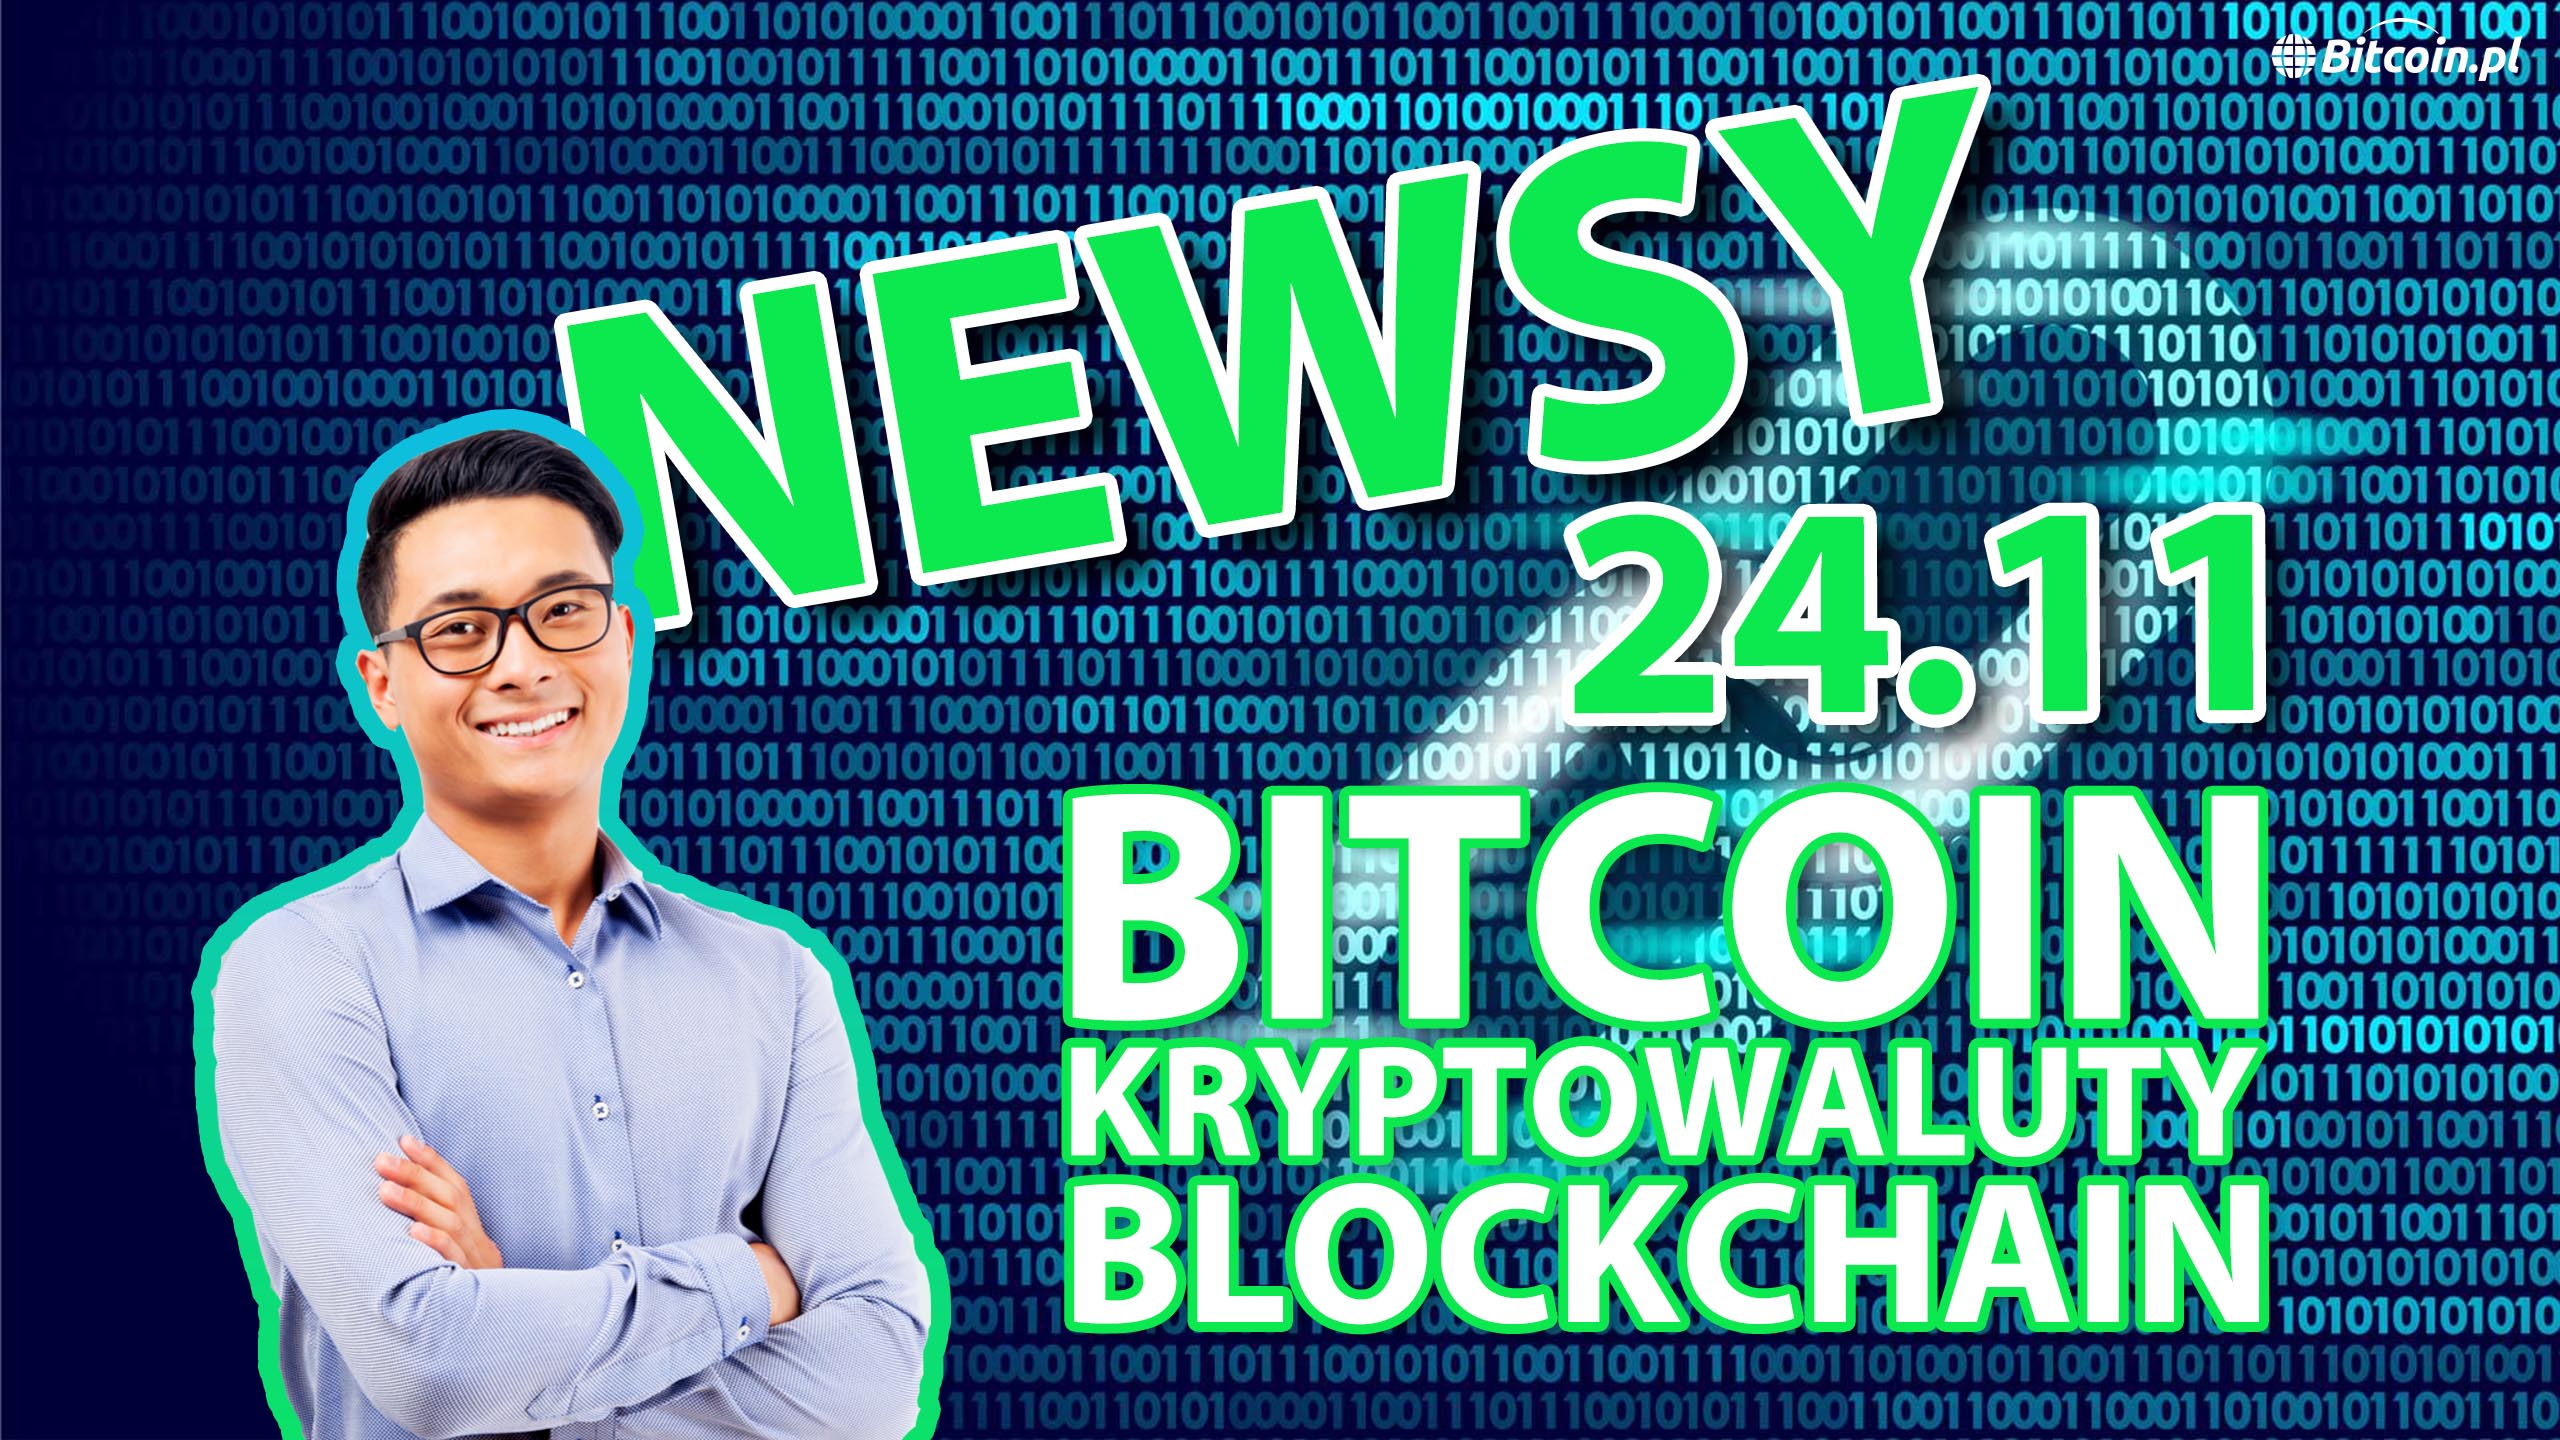 2 wiadomości Bitcoin kryptowaluty i blockchain 24.11